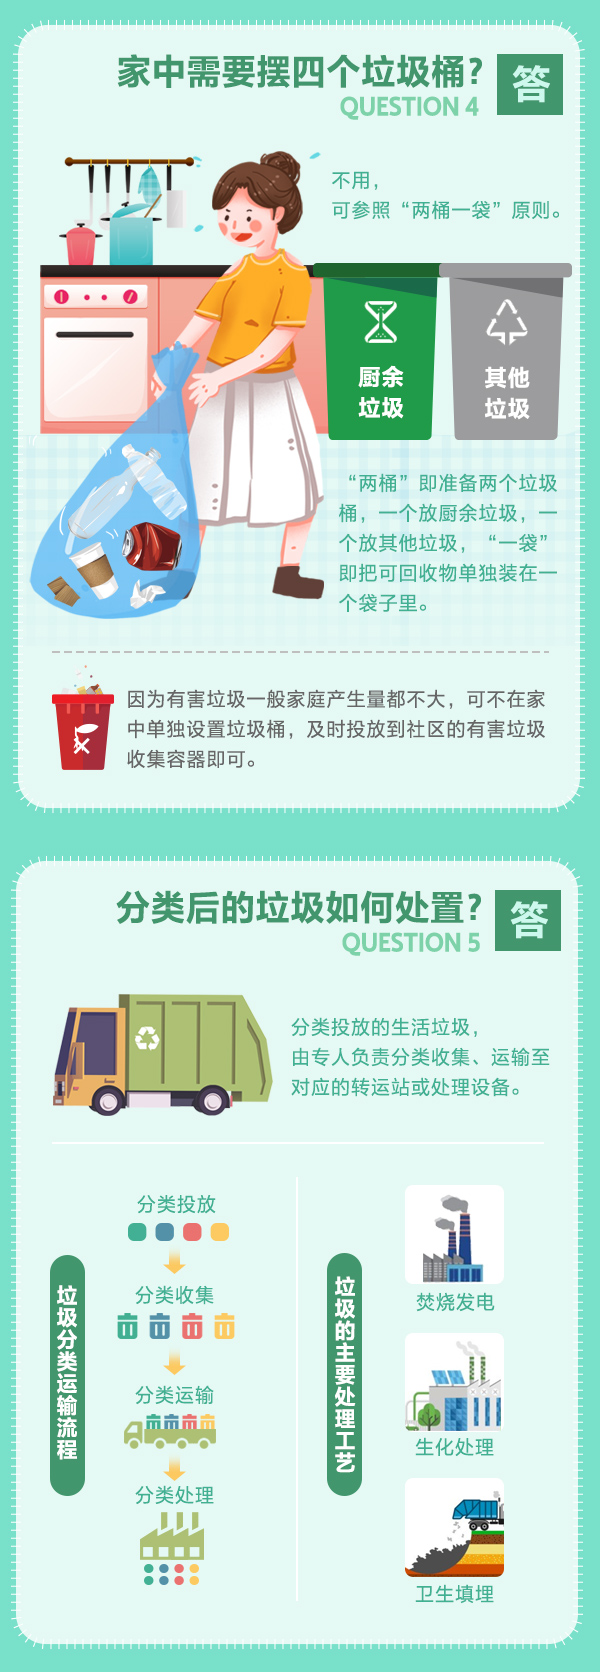 一图读懂北京市生活垃圾分类六问六答